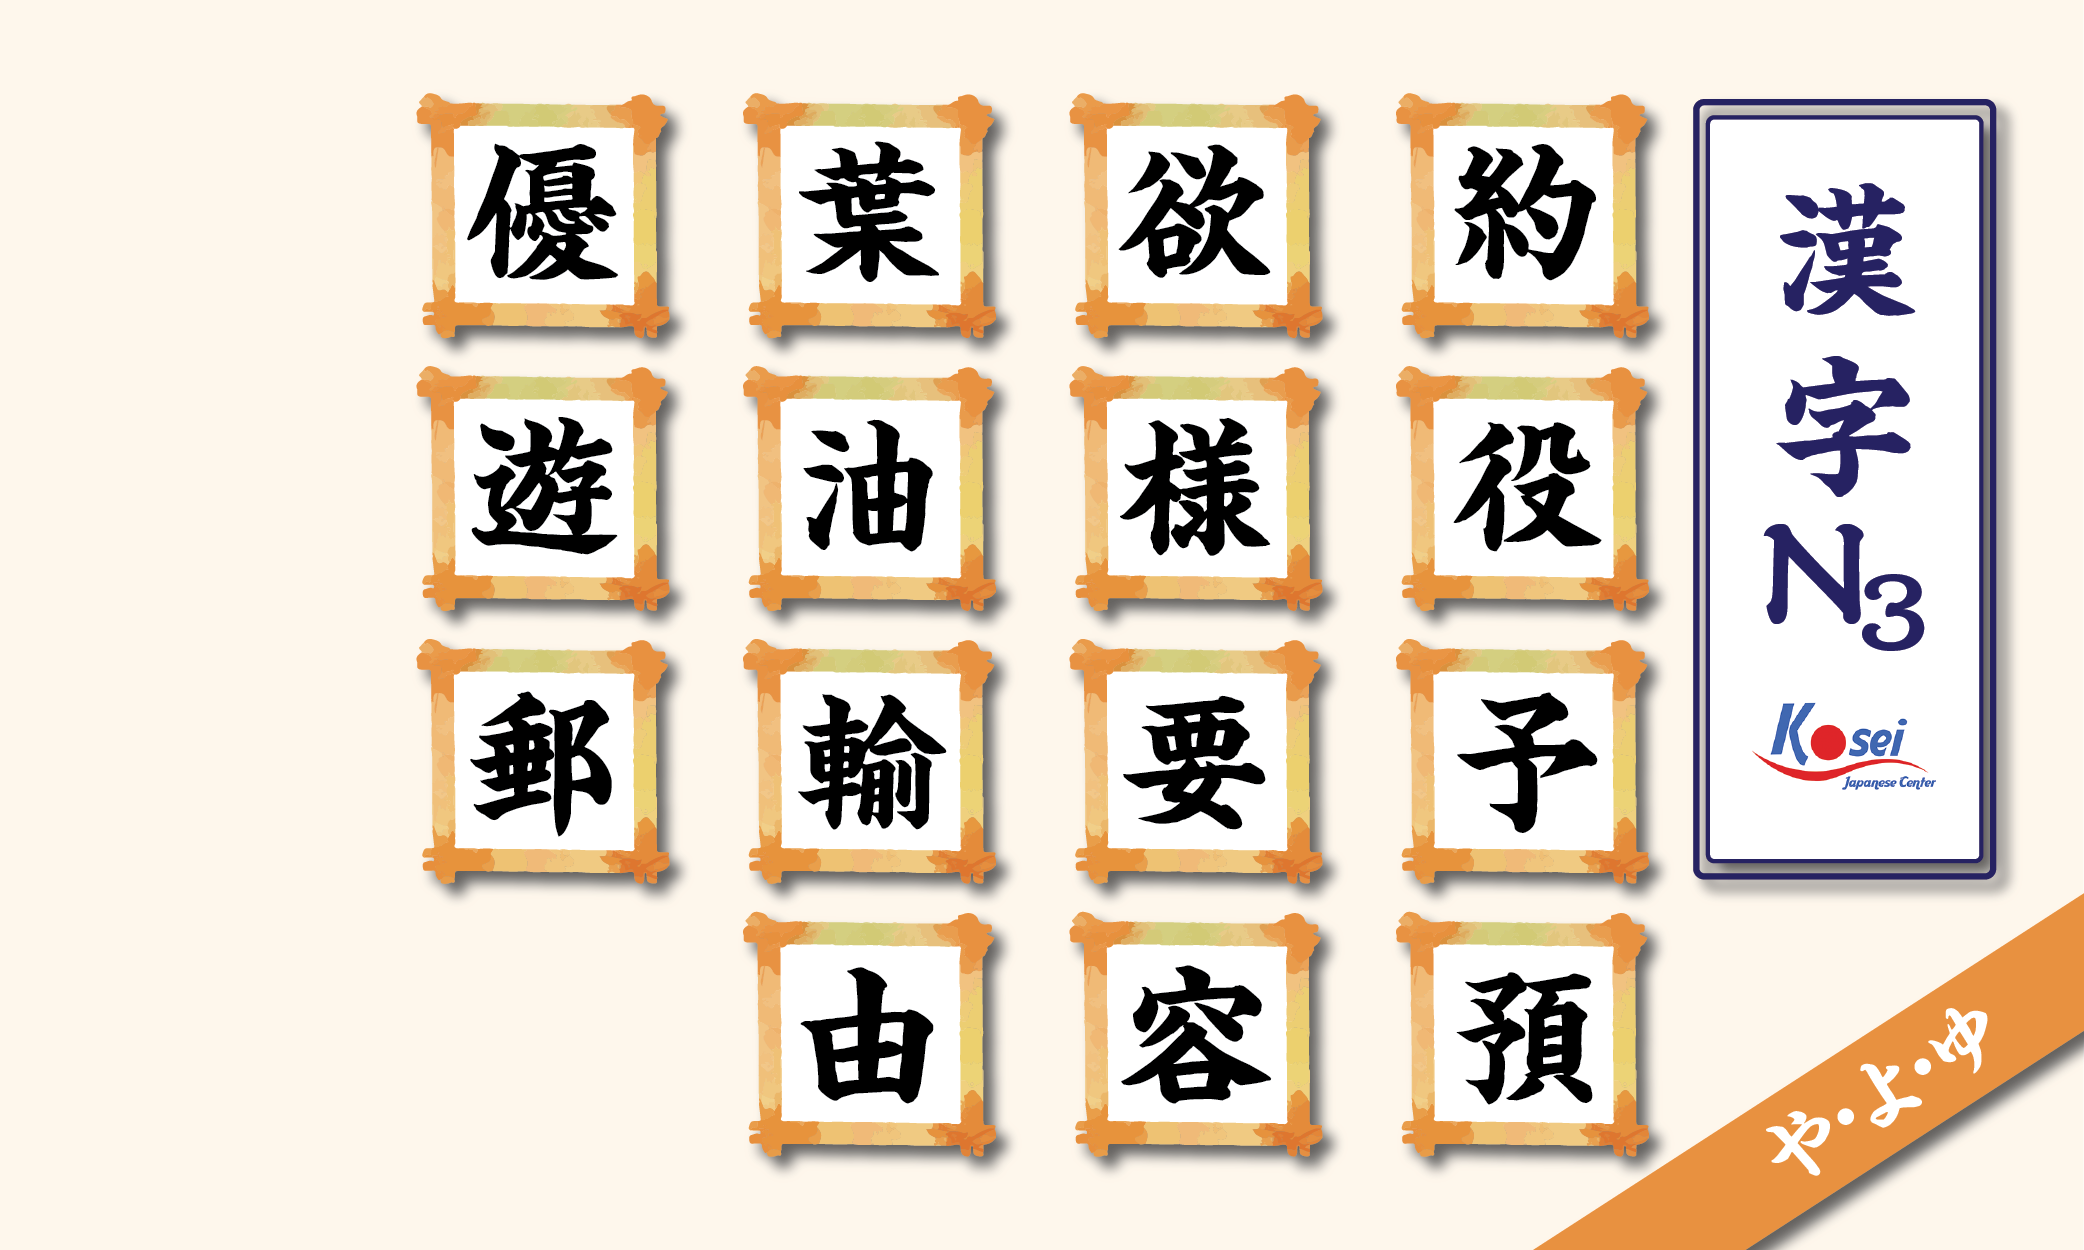 kanji n3 theo âm on hàng y